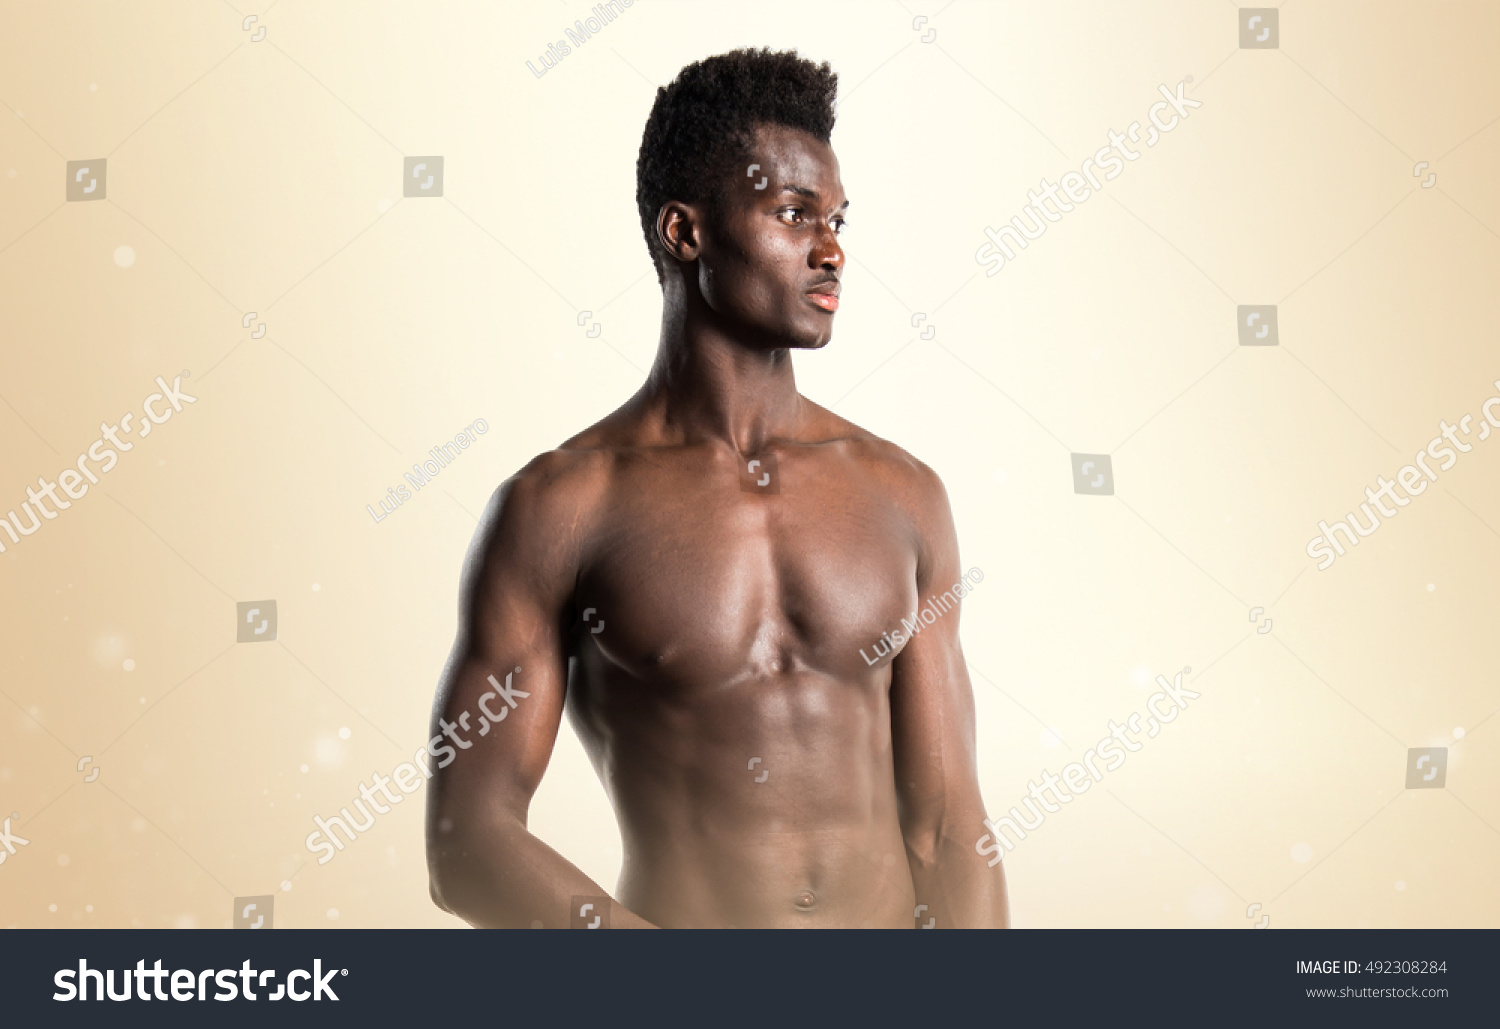 naked black men